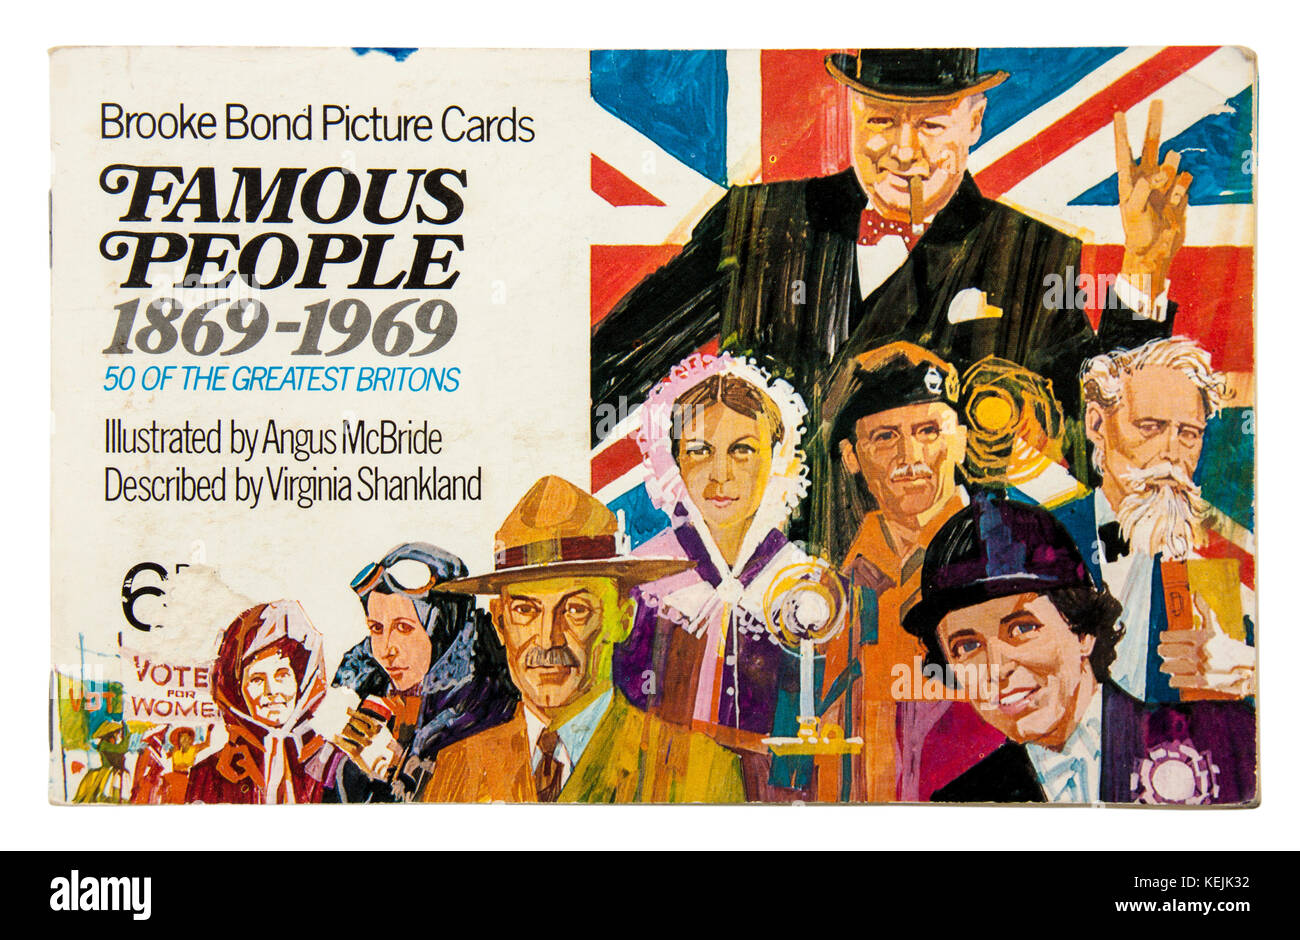 Personnes célèbres '1869-1969' Brooke Bond Photo album Cartes, publié en 1969 avec des illustrations de Angus McBride Banque D'Images